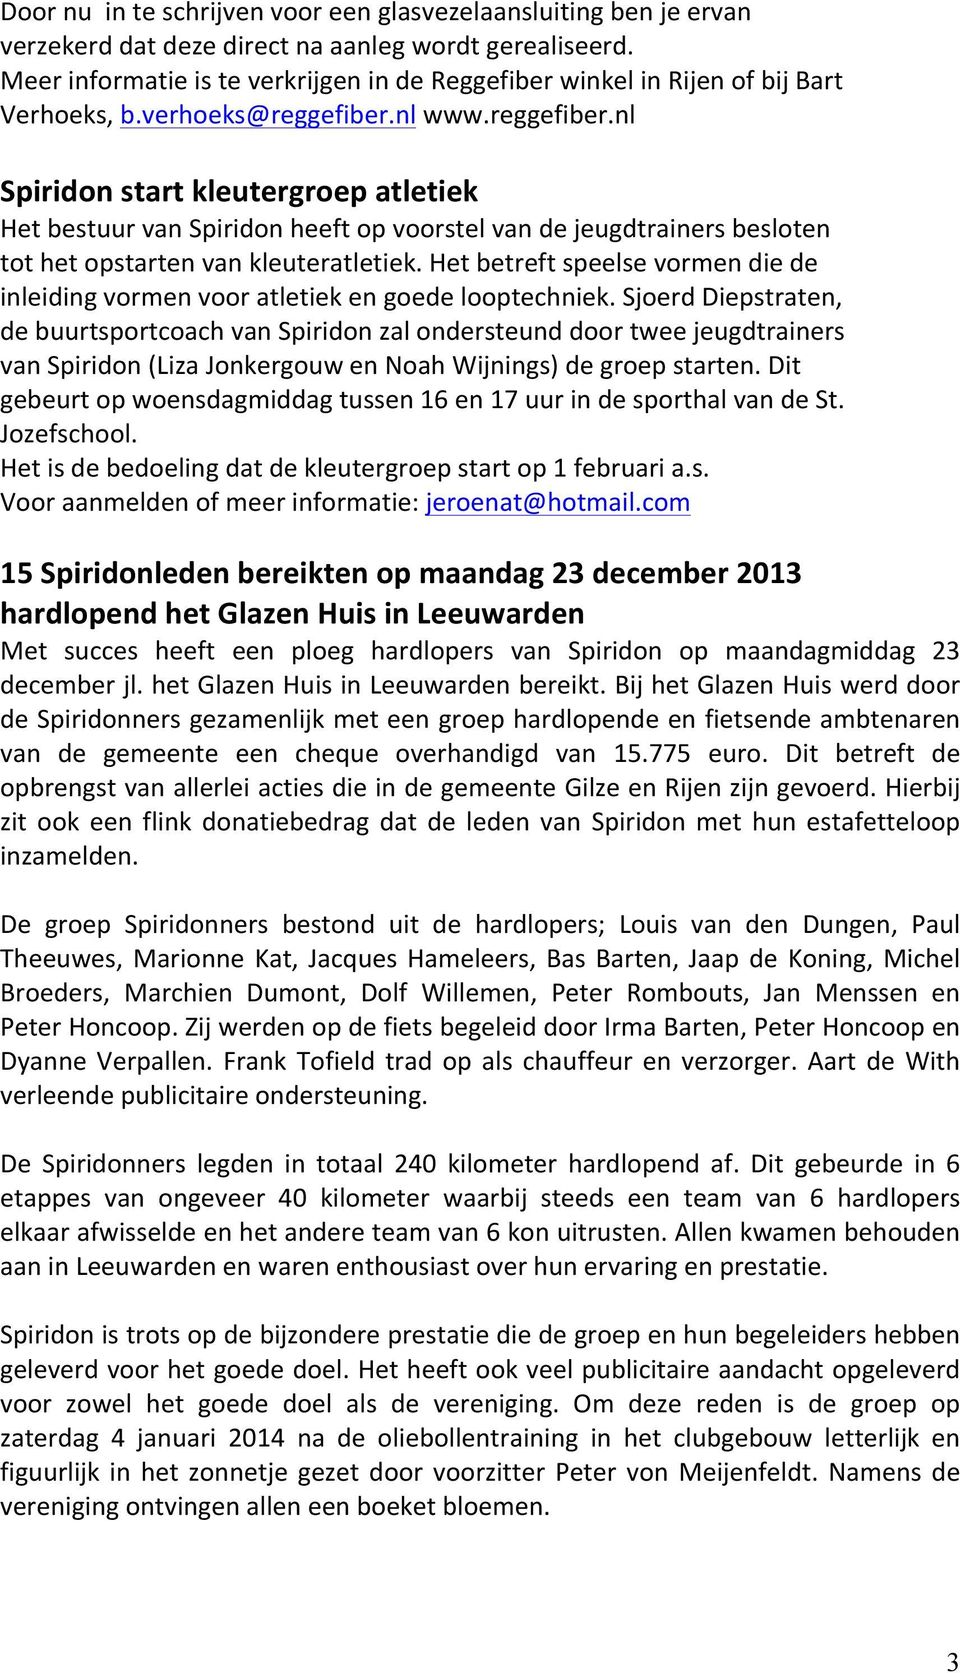 nl www.reggefiber.nl Spiridon start kleutergroep atletiek Het bestuur van Spiridon heeft op voorstel van de jeugdtrainers besloten tot het opstarten van kleuteratletiek.